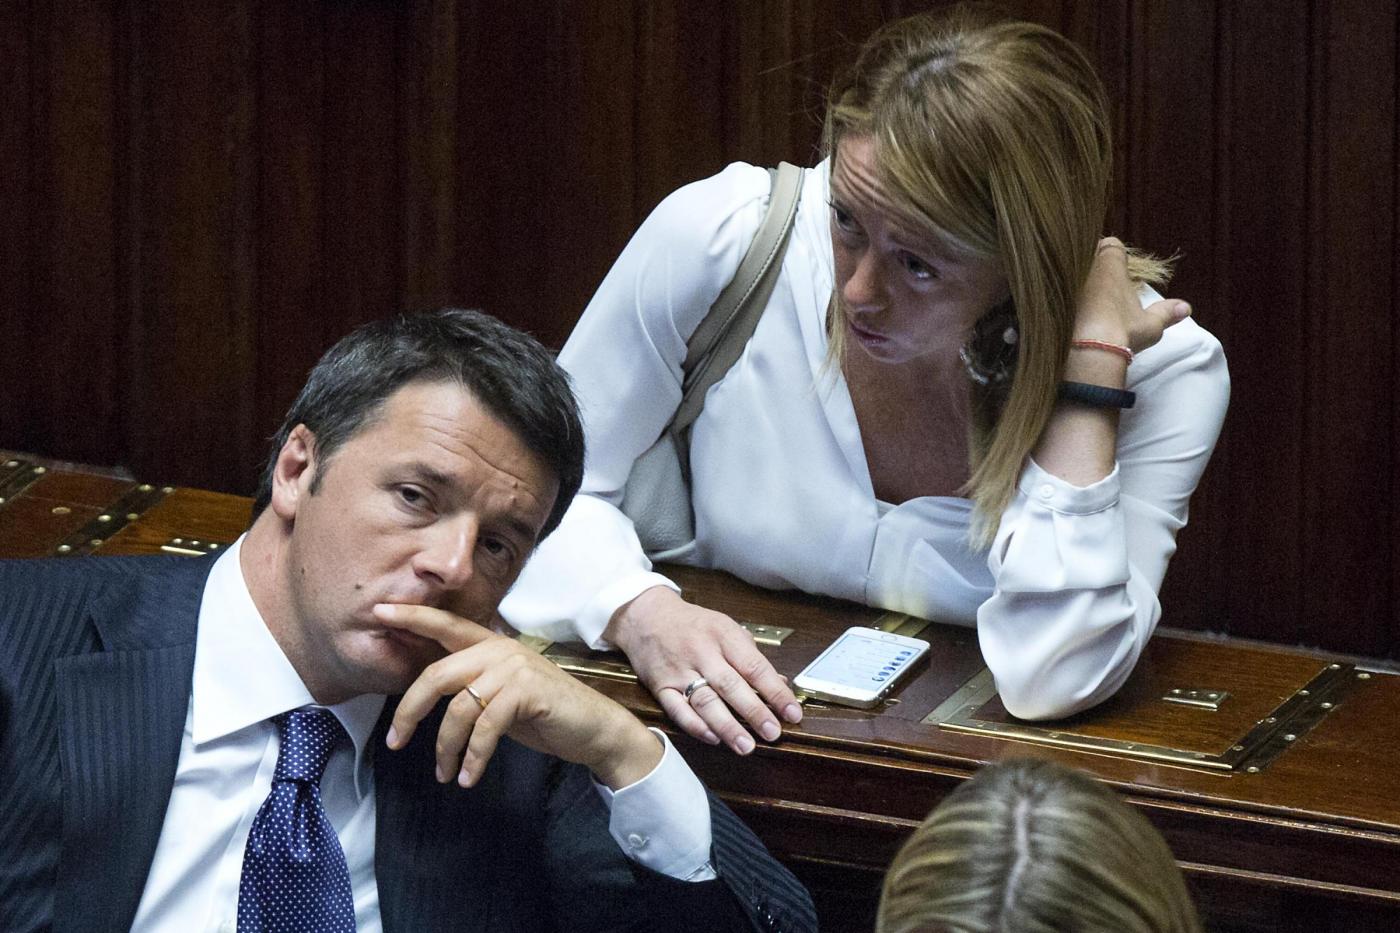 Extraprofitti, Renzi: "Meloni populista, quasi grillina. Ha fatto un regalo a Conte"